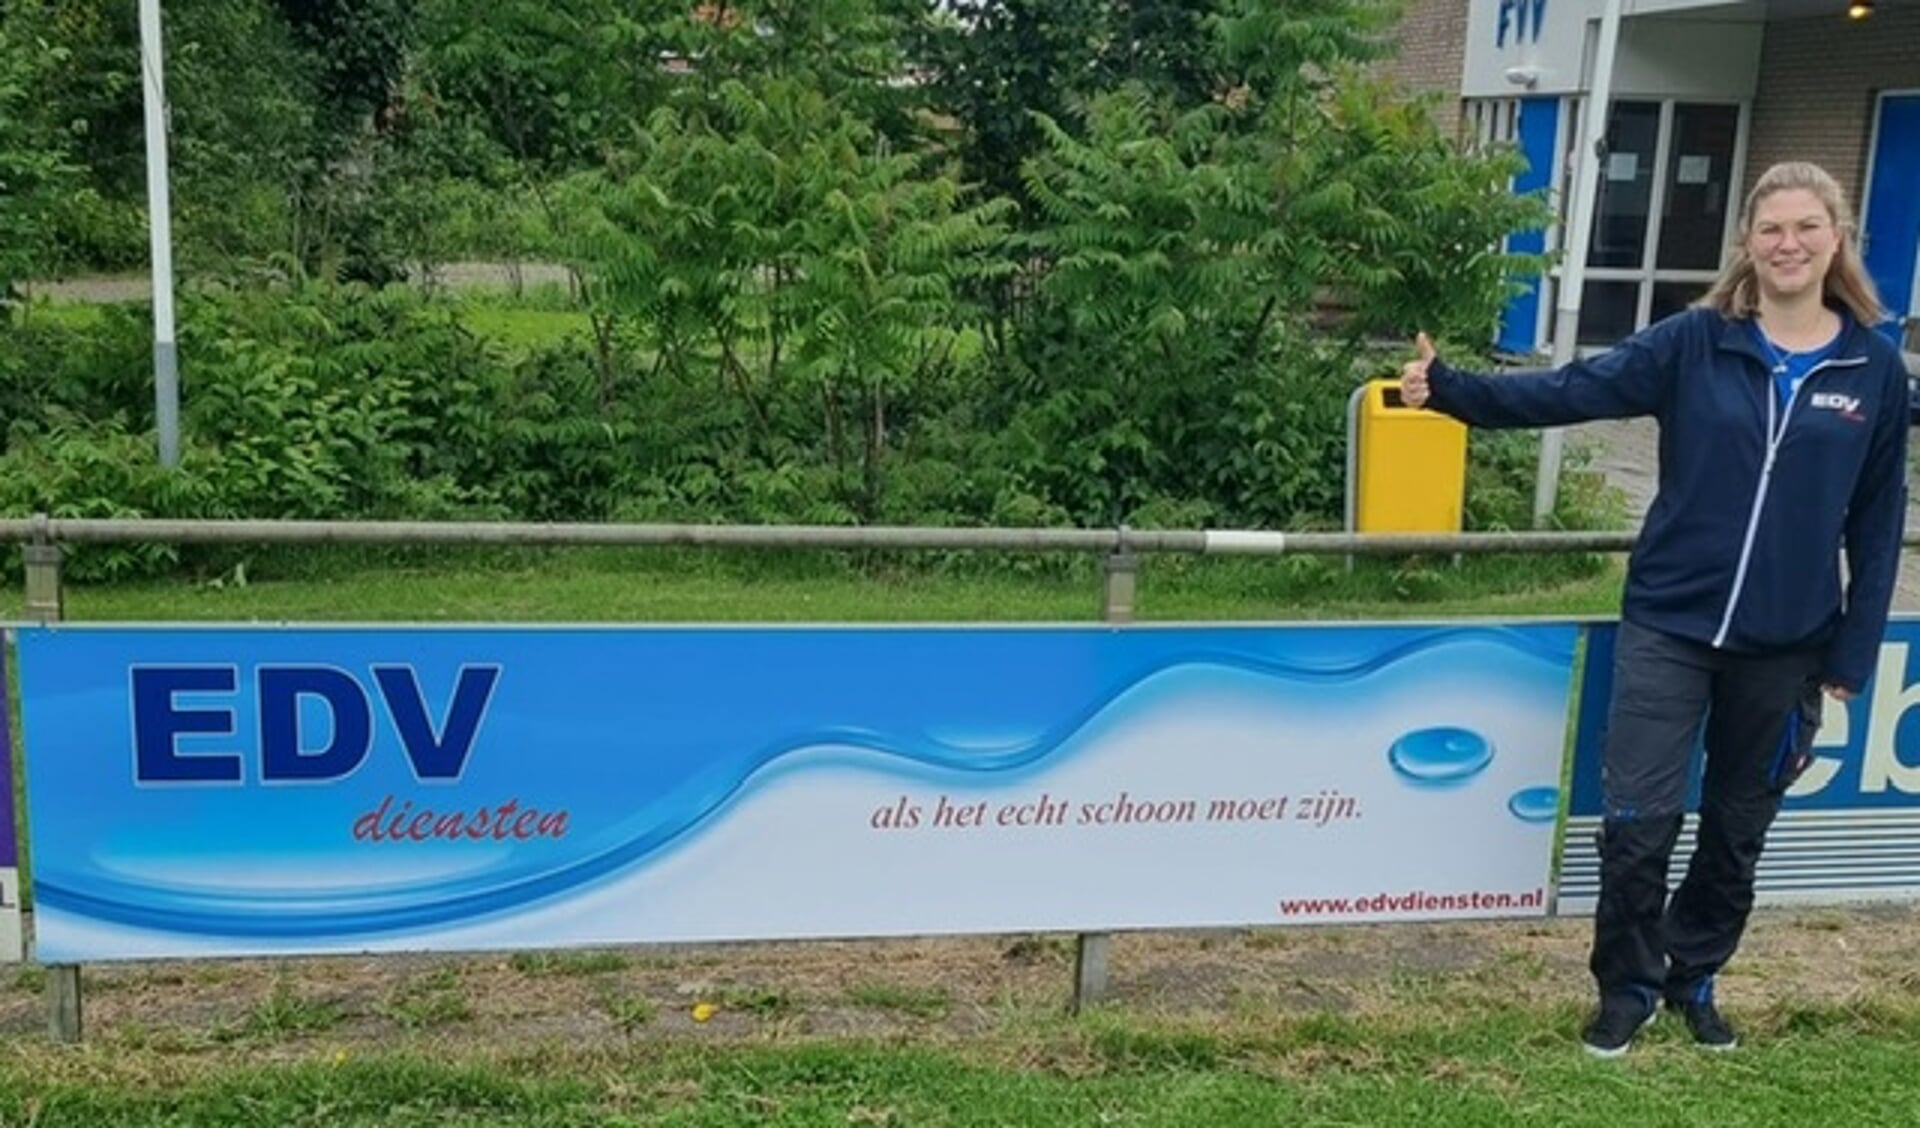 De presentatie van het reclamebord van EDV Diensten langs het hoofdveld van FVV.